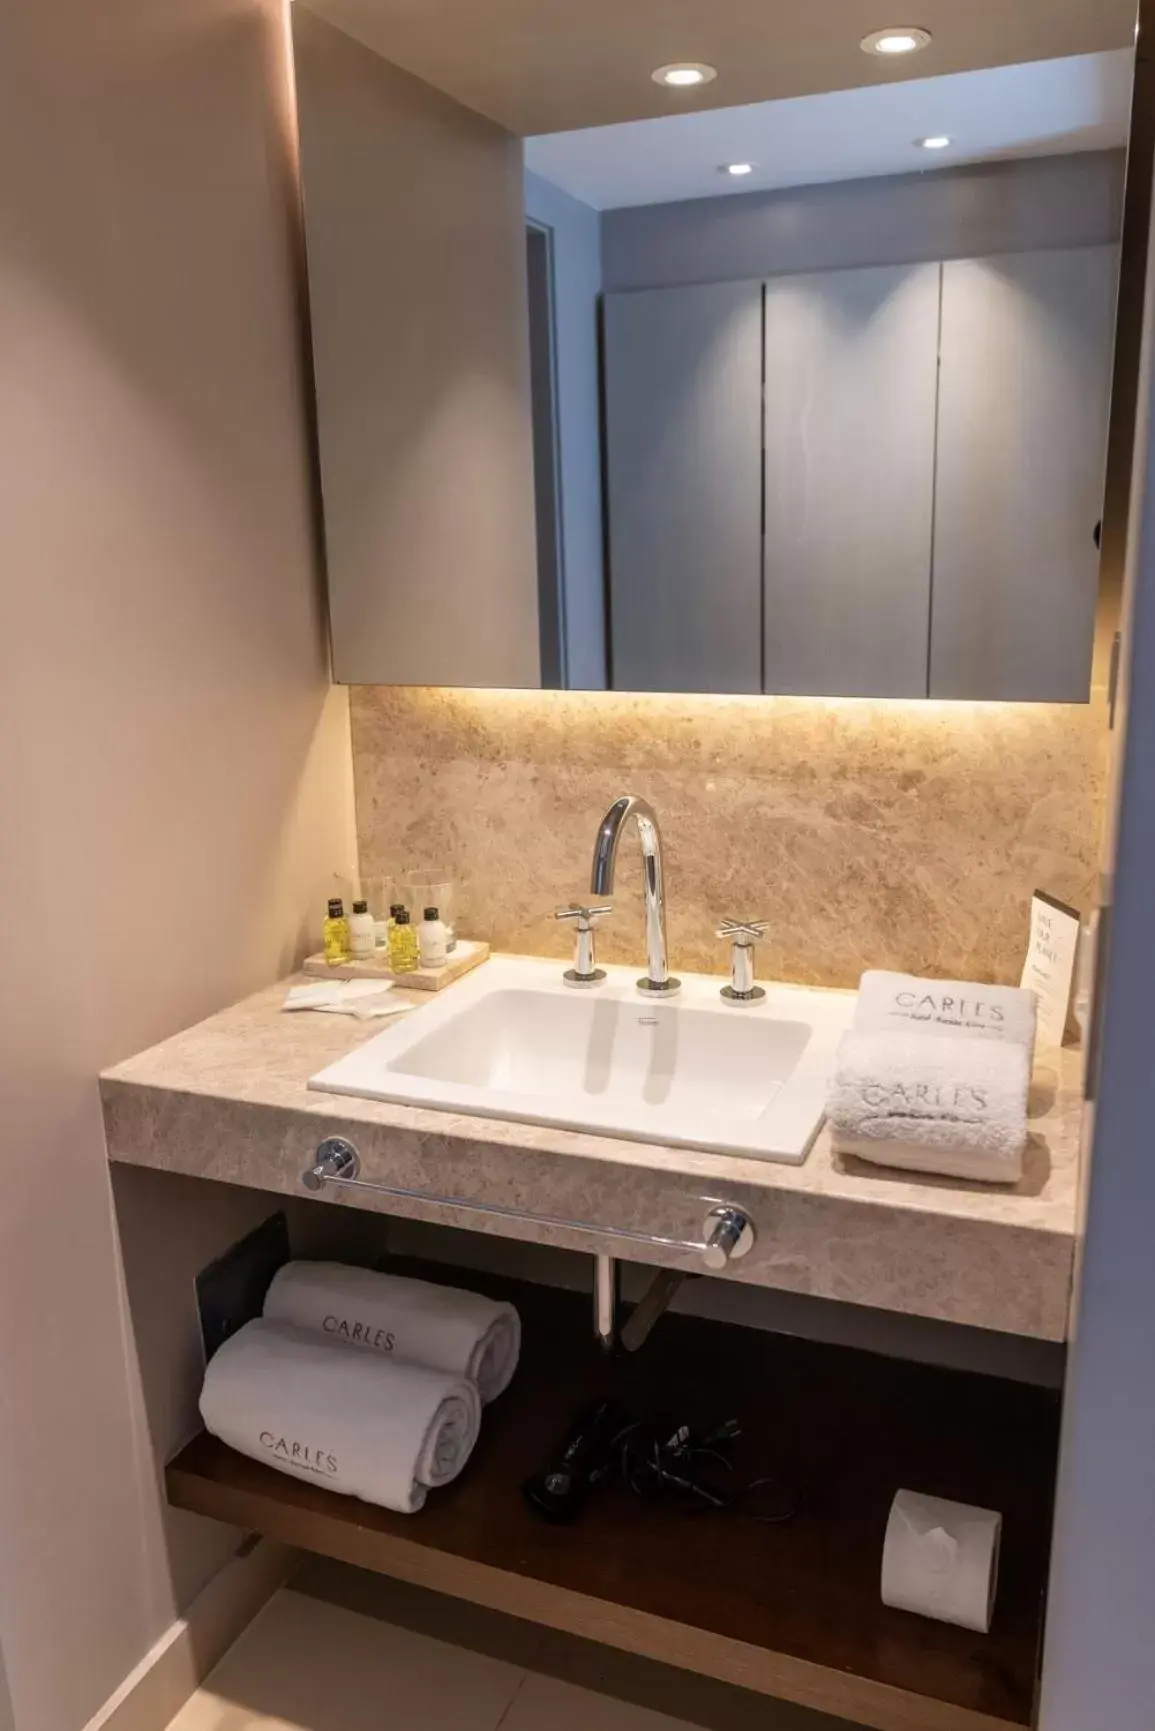 Bathroom in Carles Hotel